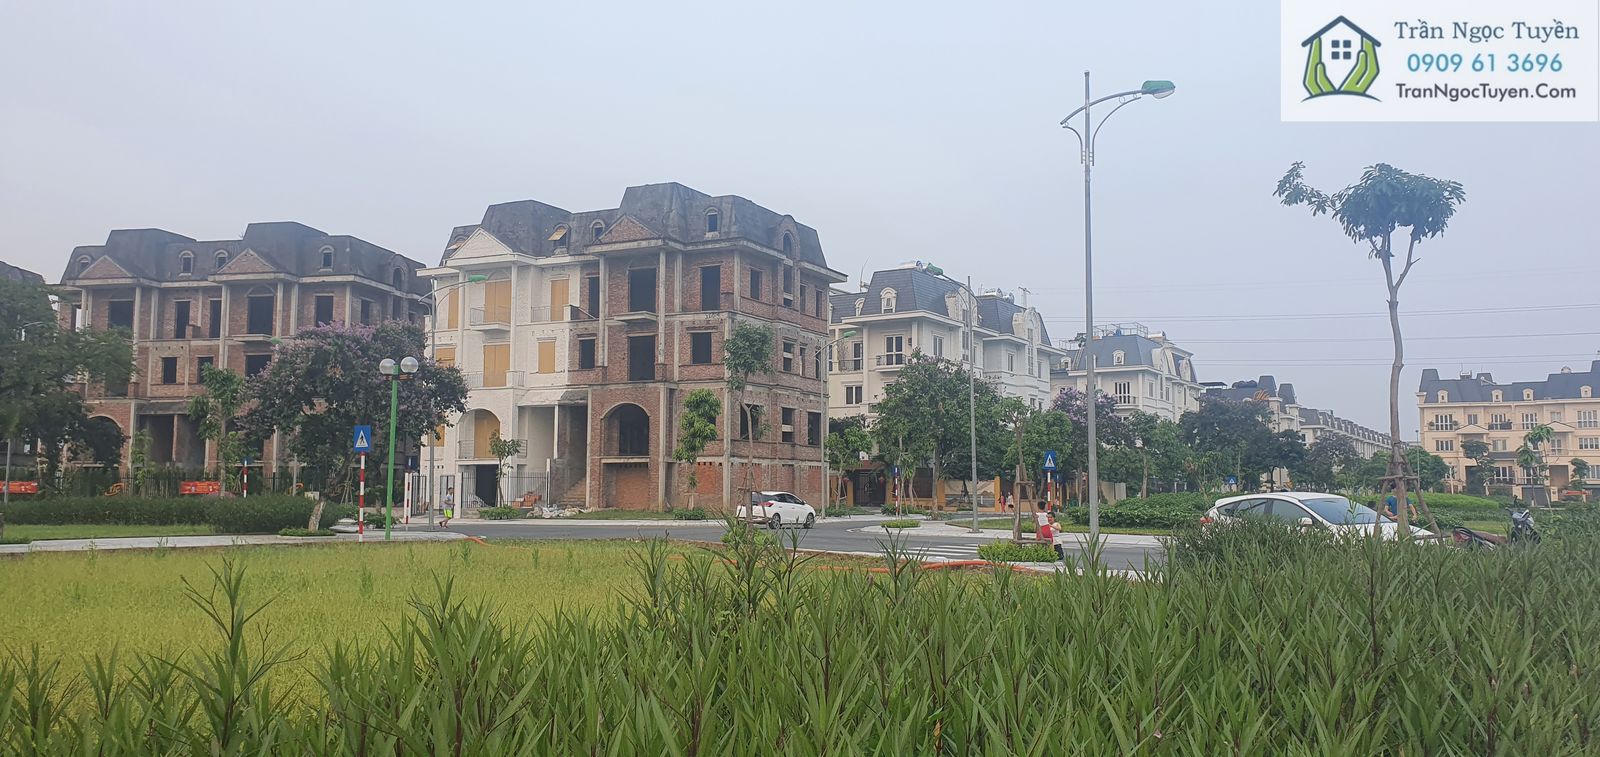 Bán biệt thự xây thô hoàn thiện dự án Lideco Bắc 32, Hoài Đức, Hà Nội